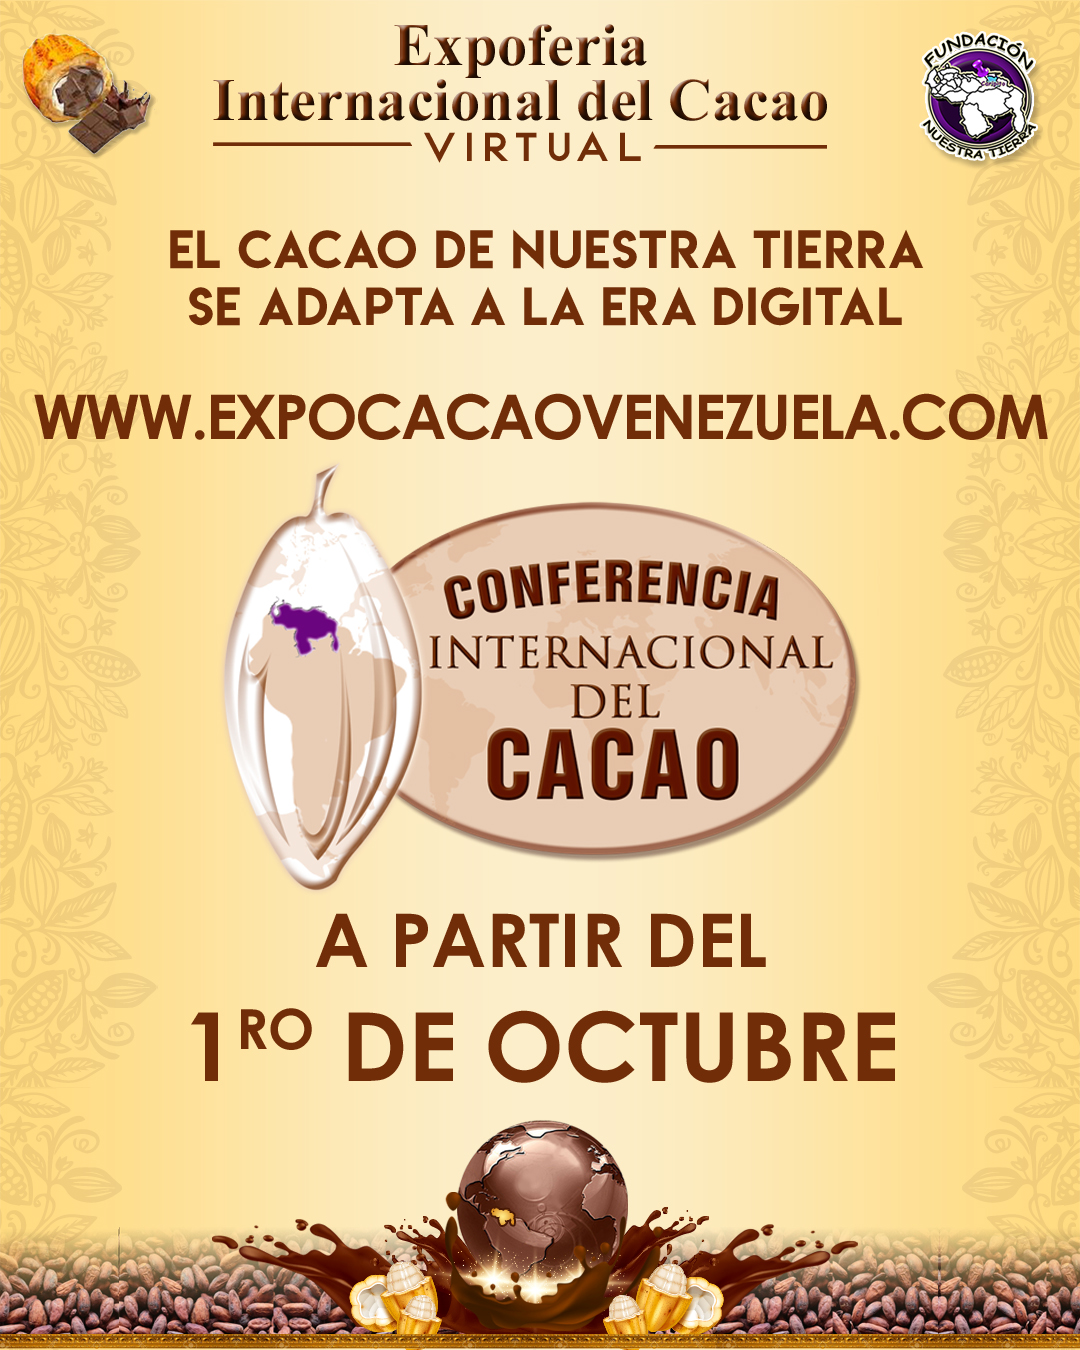 Conferencias  en el marco de la Expoferia internacional del Cacao